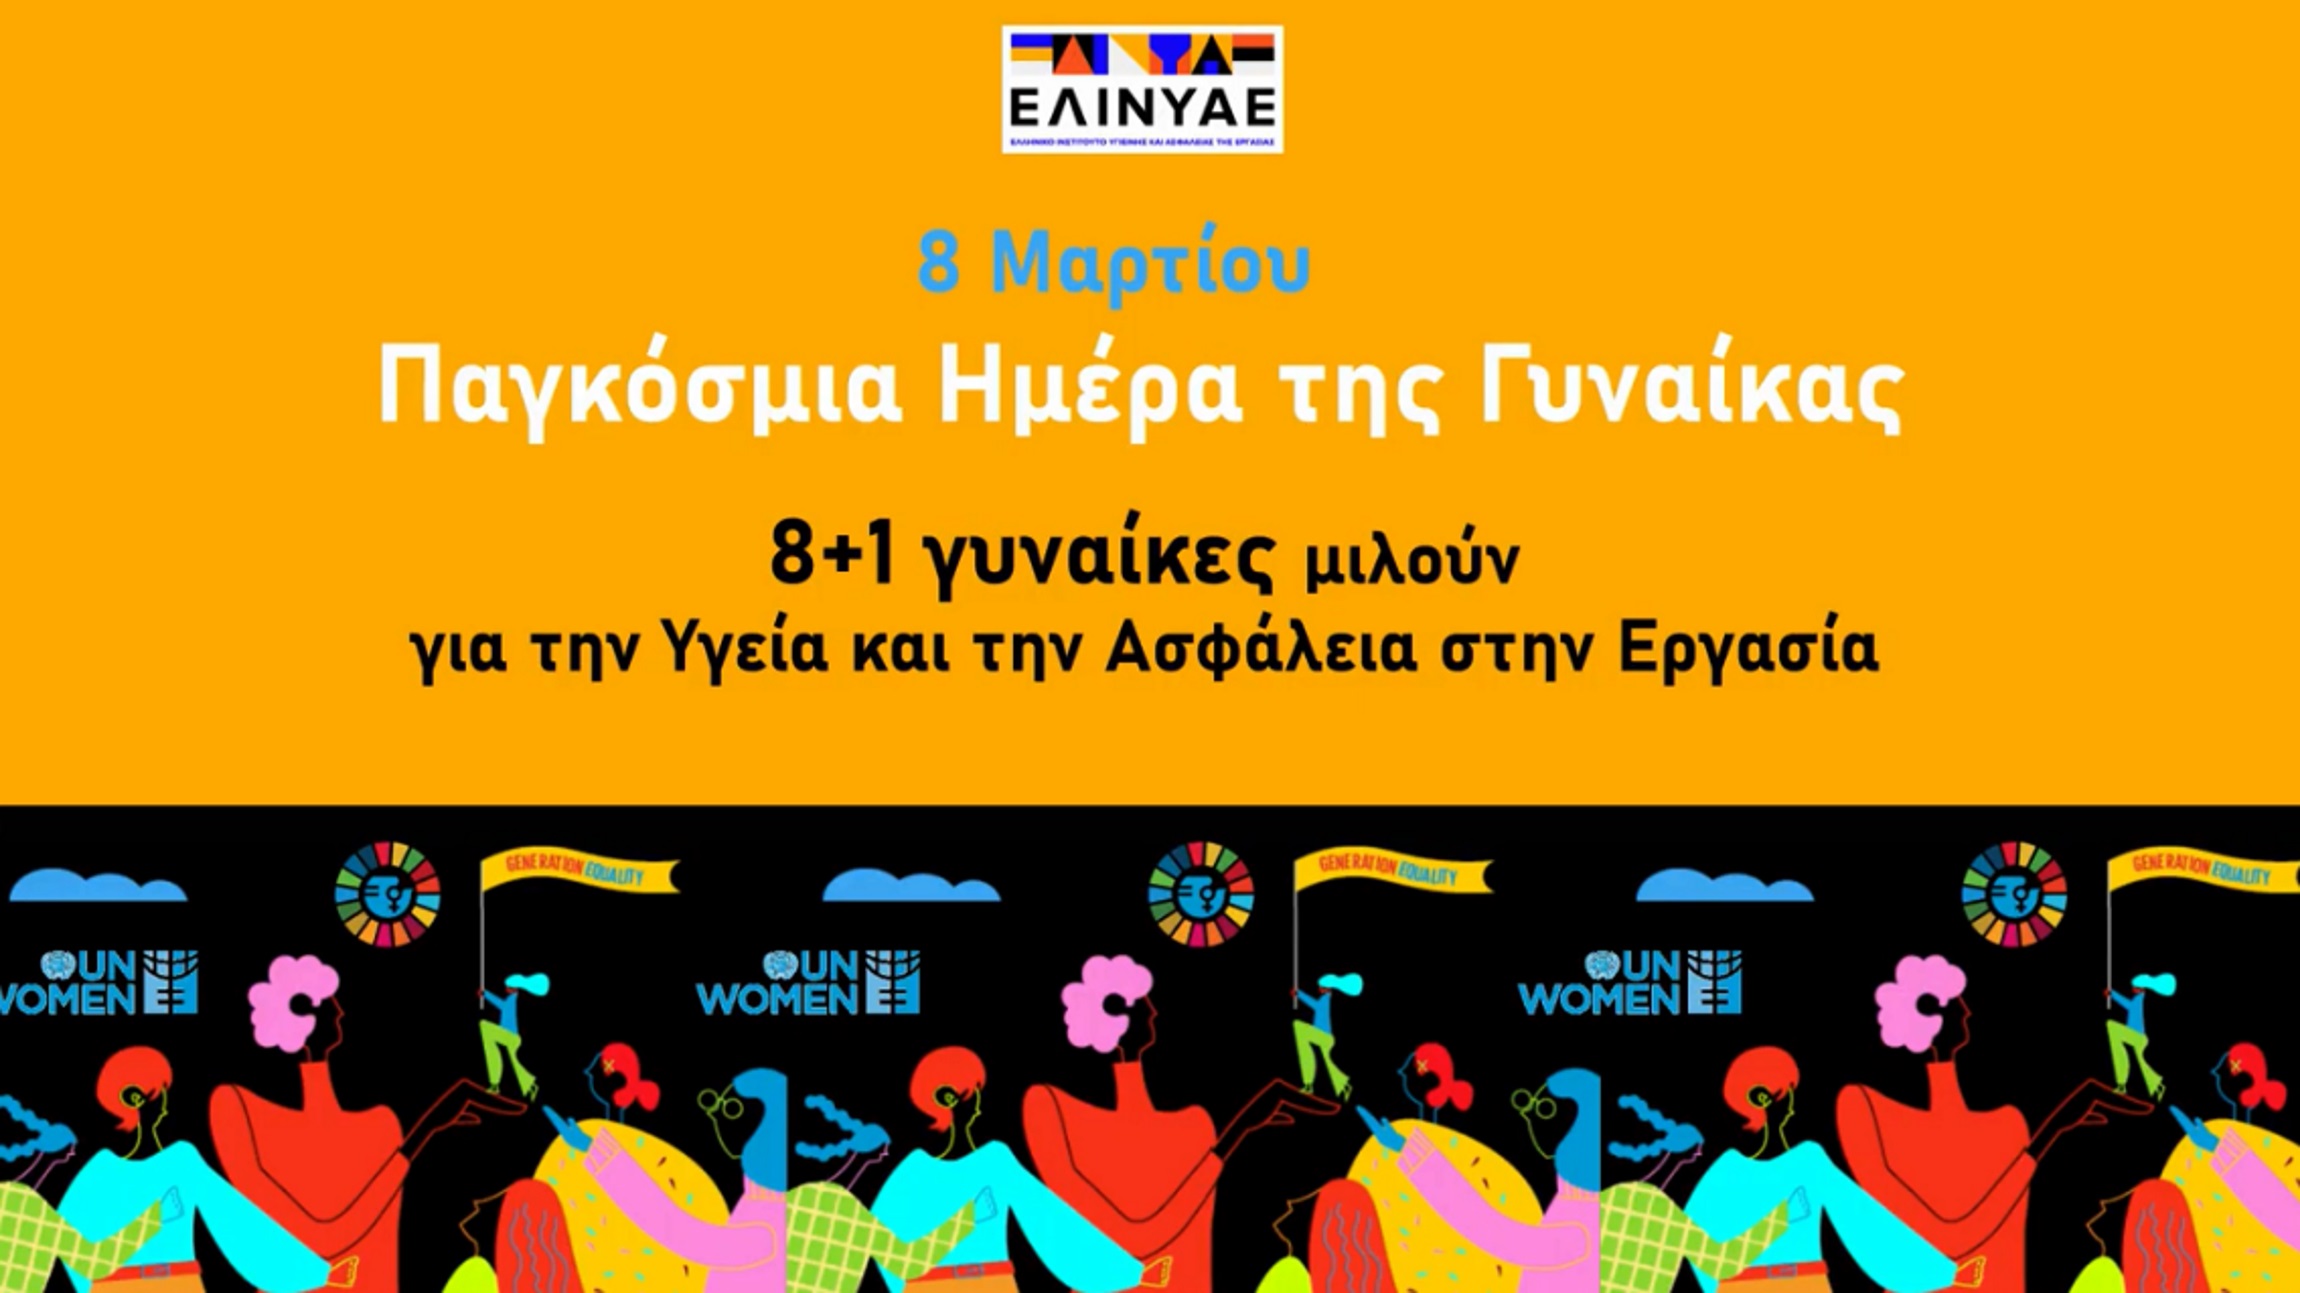 Το Ελληνικό Ινστιτούτο Υγιεινής και Ασφάλειας Εργασίας στηρίζει τις γυναίκες (video)